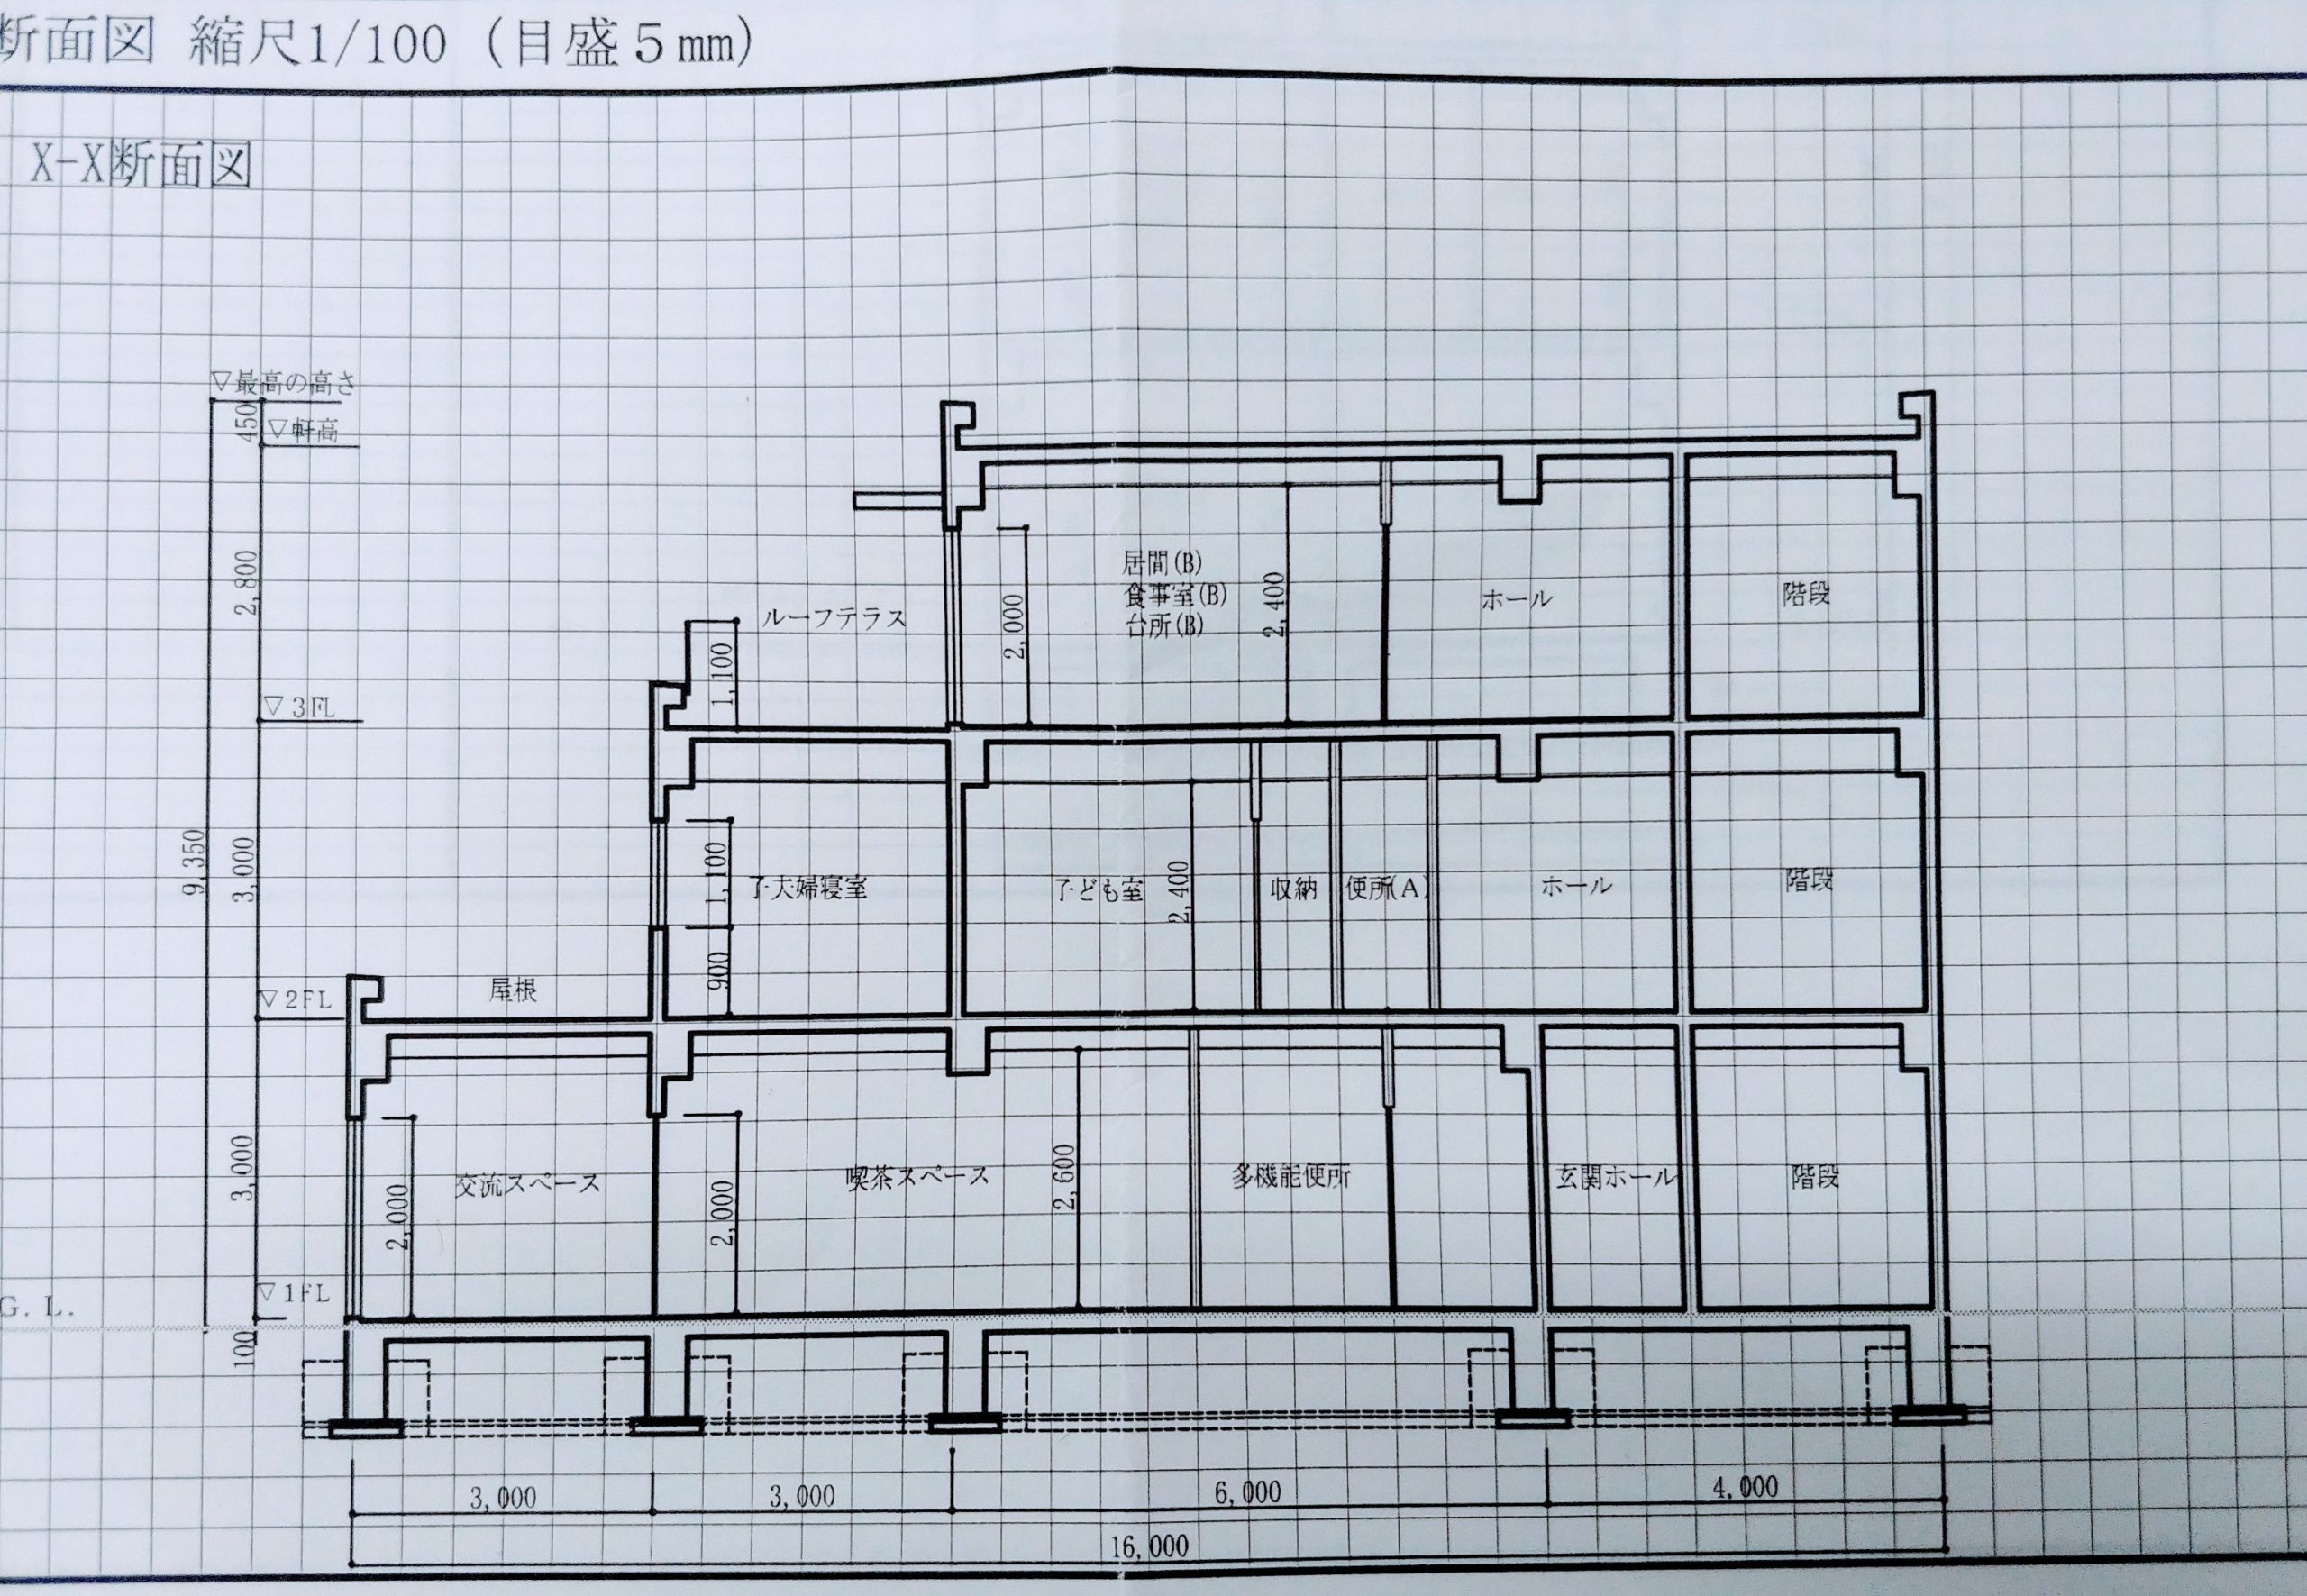 建築の手書き断面パースの書き方【一点透視図法で見せる】 一級建築士への道